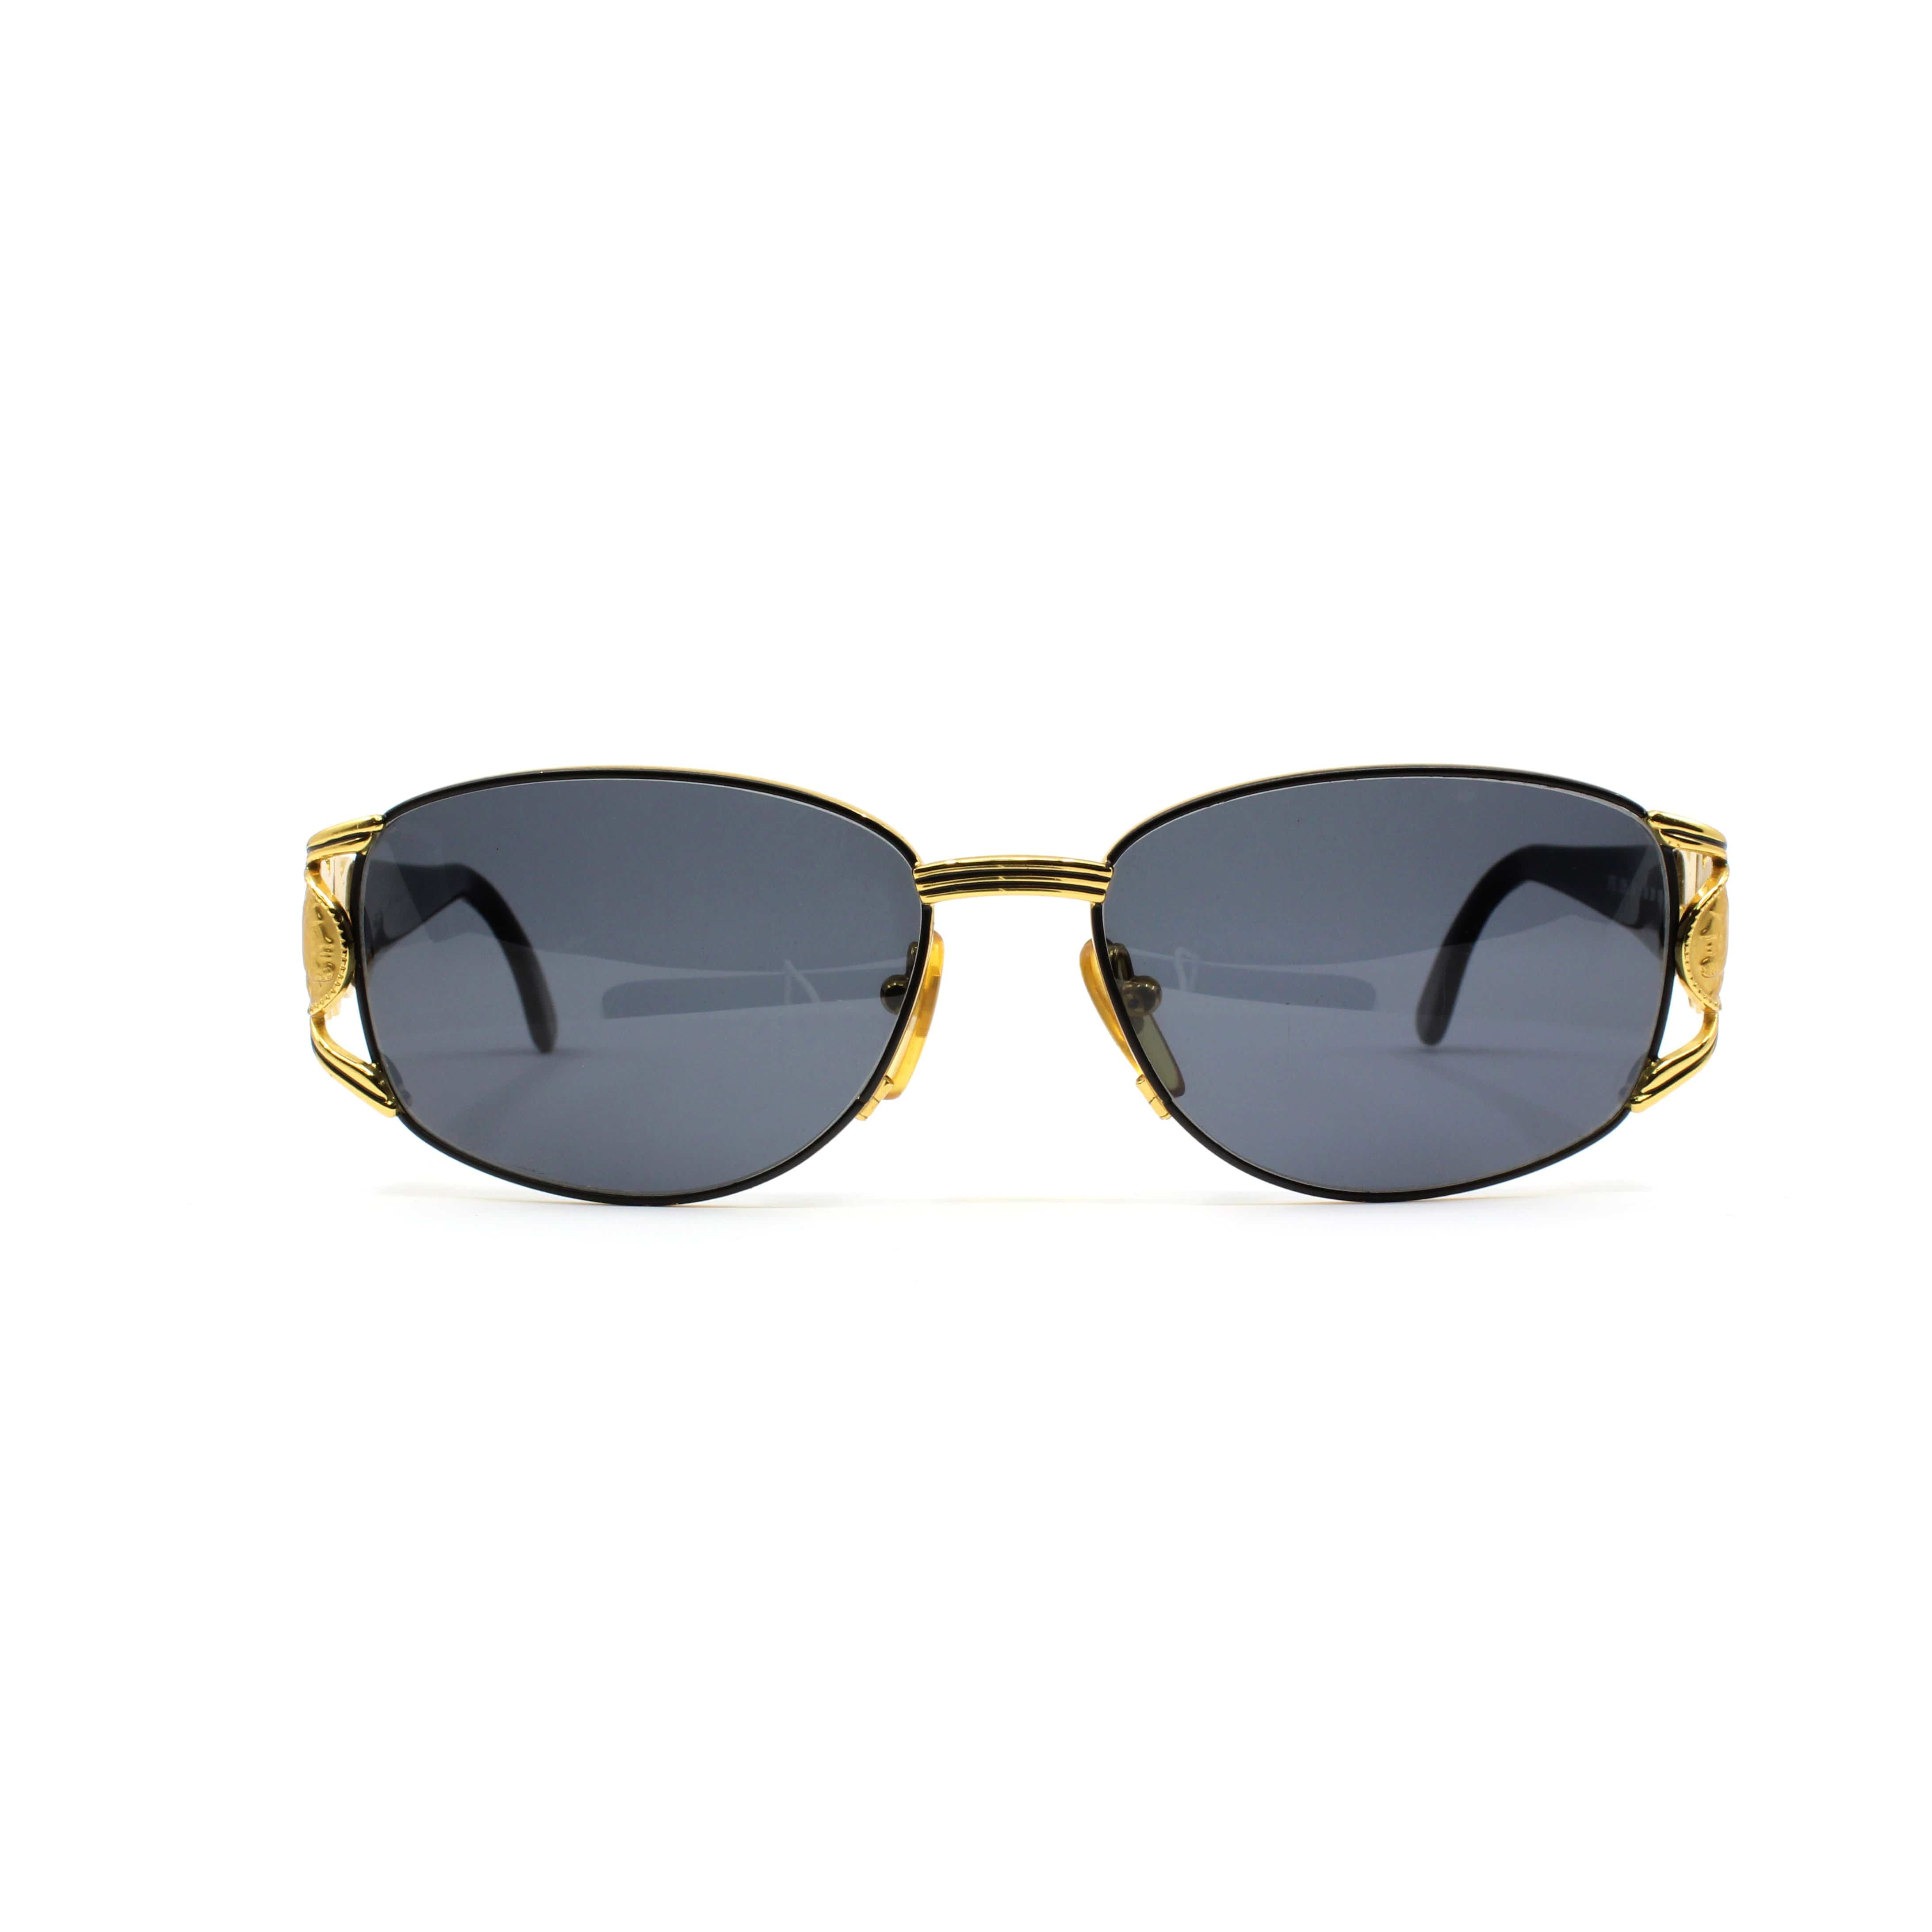 Vintage Fendi FS 295 201 Sunglasses